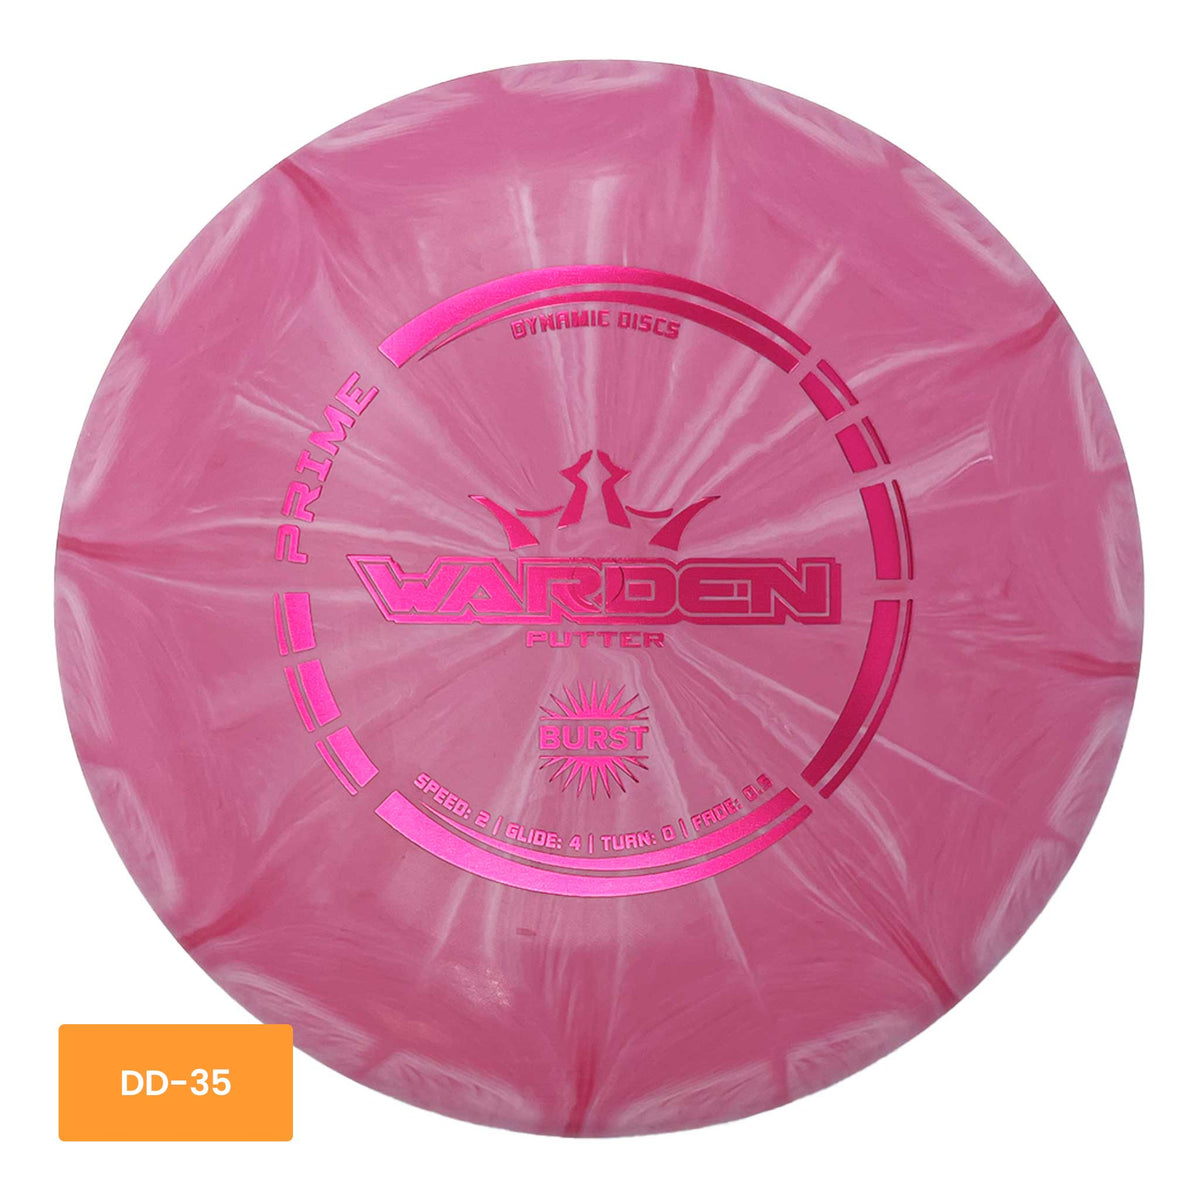 Dynamic Discs Prime Burst Warden putter - Pink